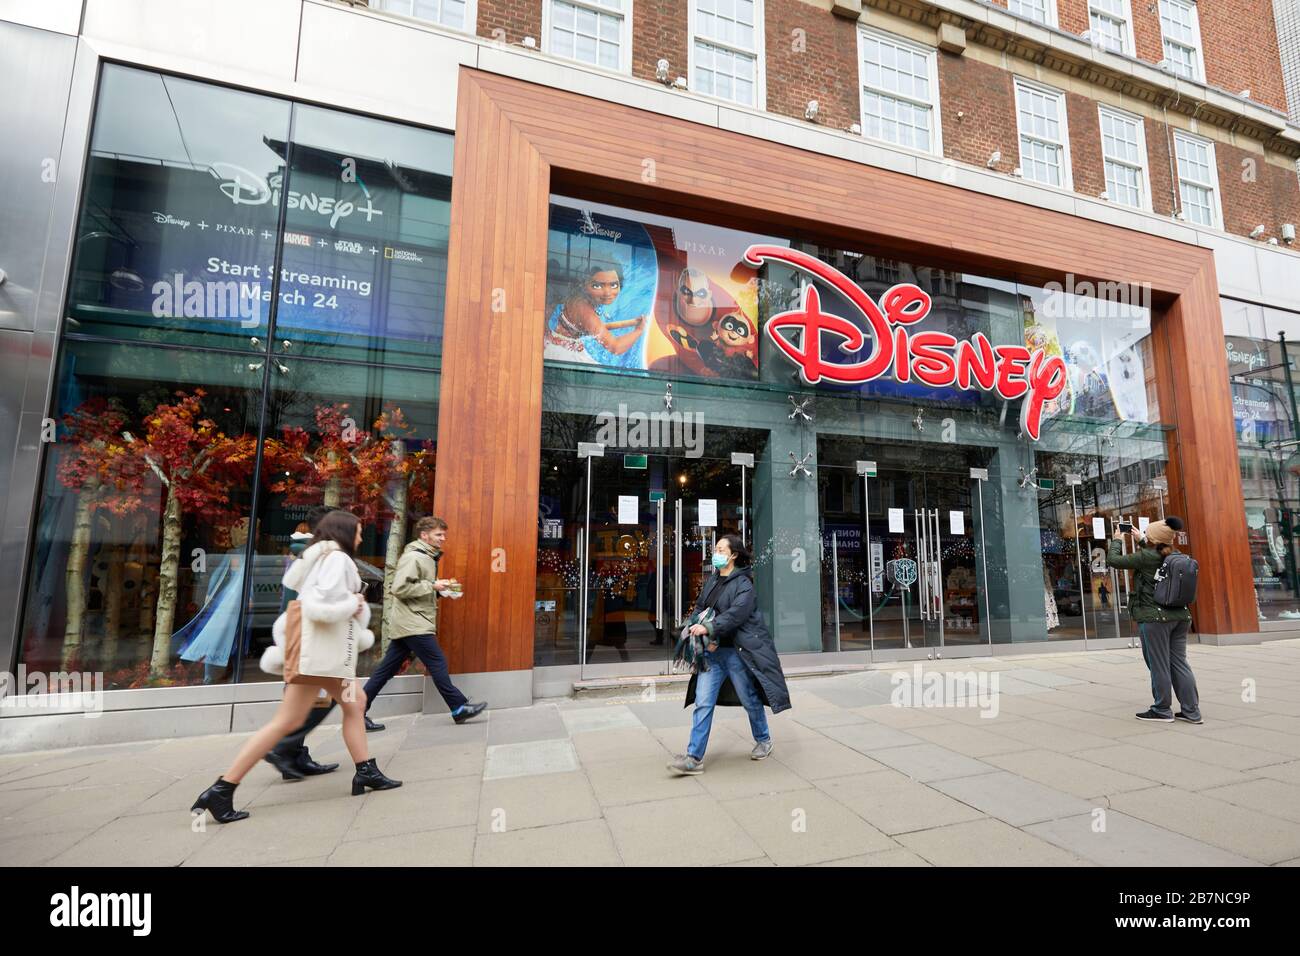 London, Großbritannien - 17. März 2020: Der Disney Store in der Oxford Street. Das US-amerikanische Unterhaltungskonglomerat hat aufgrund der weltweiten COVID-19-Epidemie alle Hotels und Einzelhandelsgeschäfte geschlossen. Stockfoto